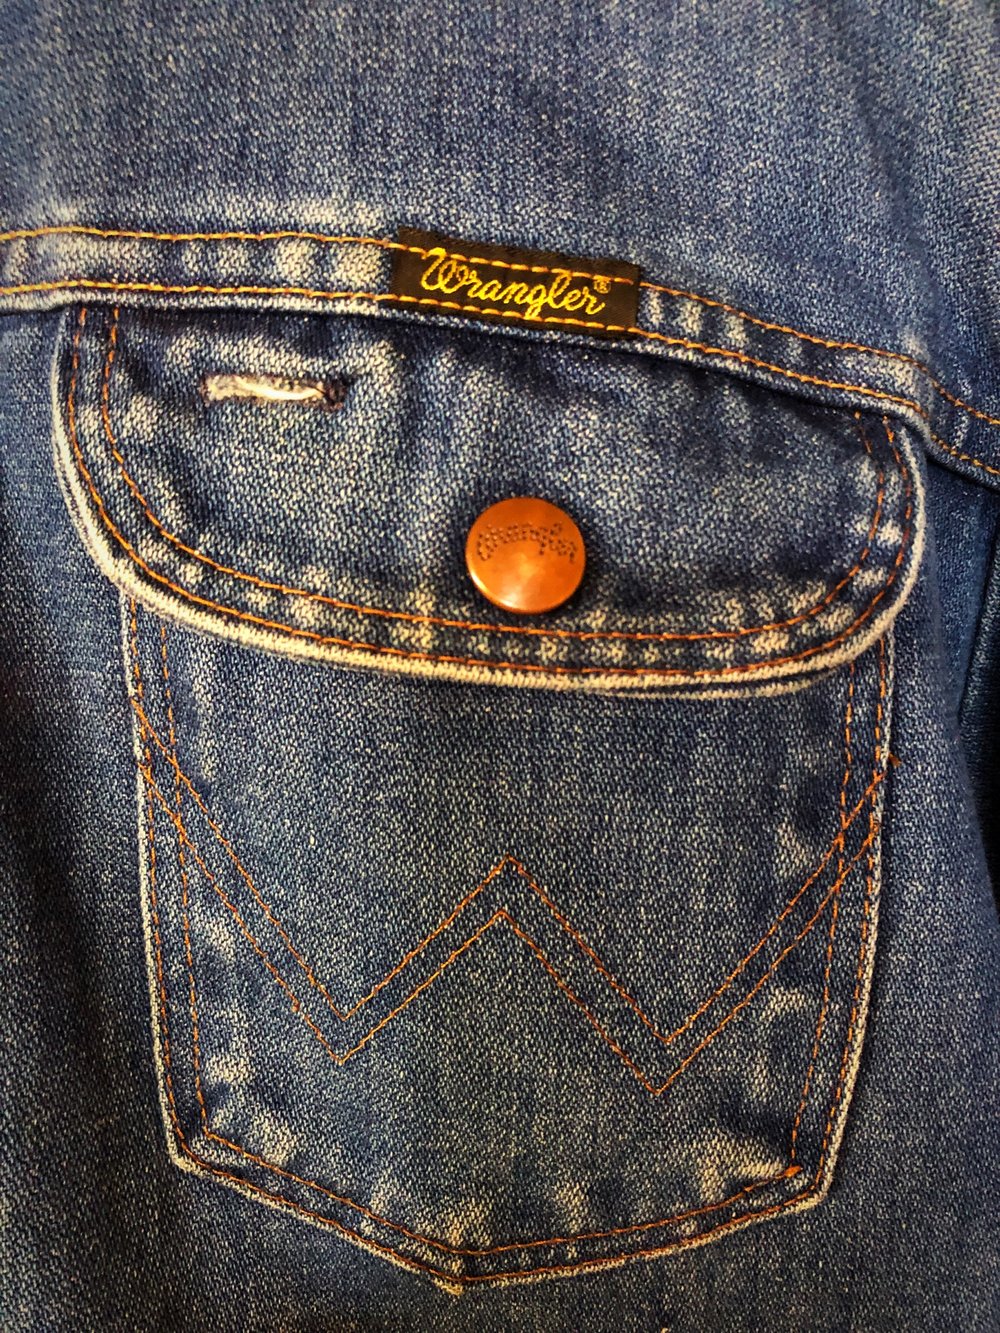 Vintage Wrangler Denim Jacket With Patches — Star Struck Vintage